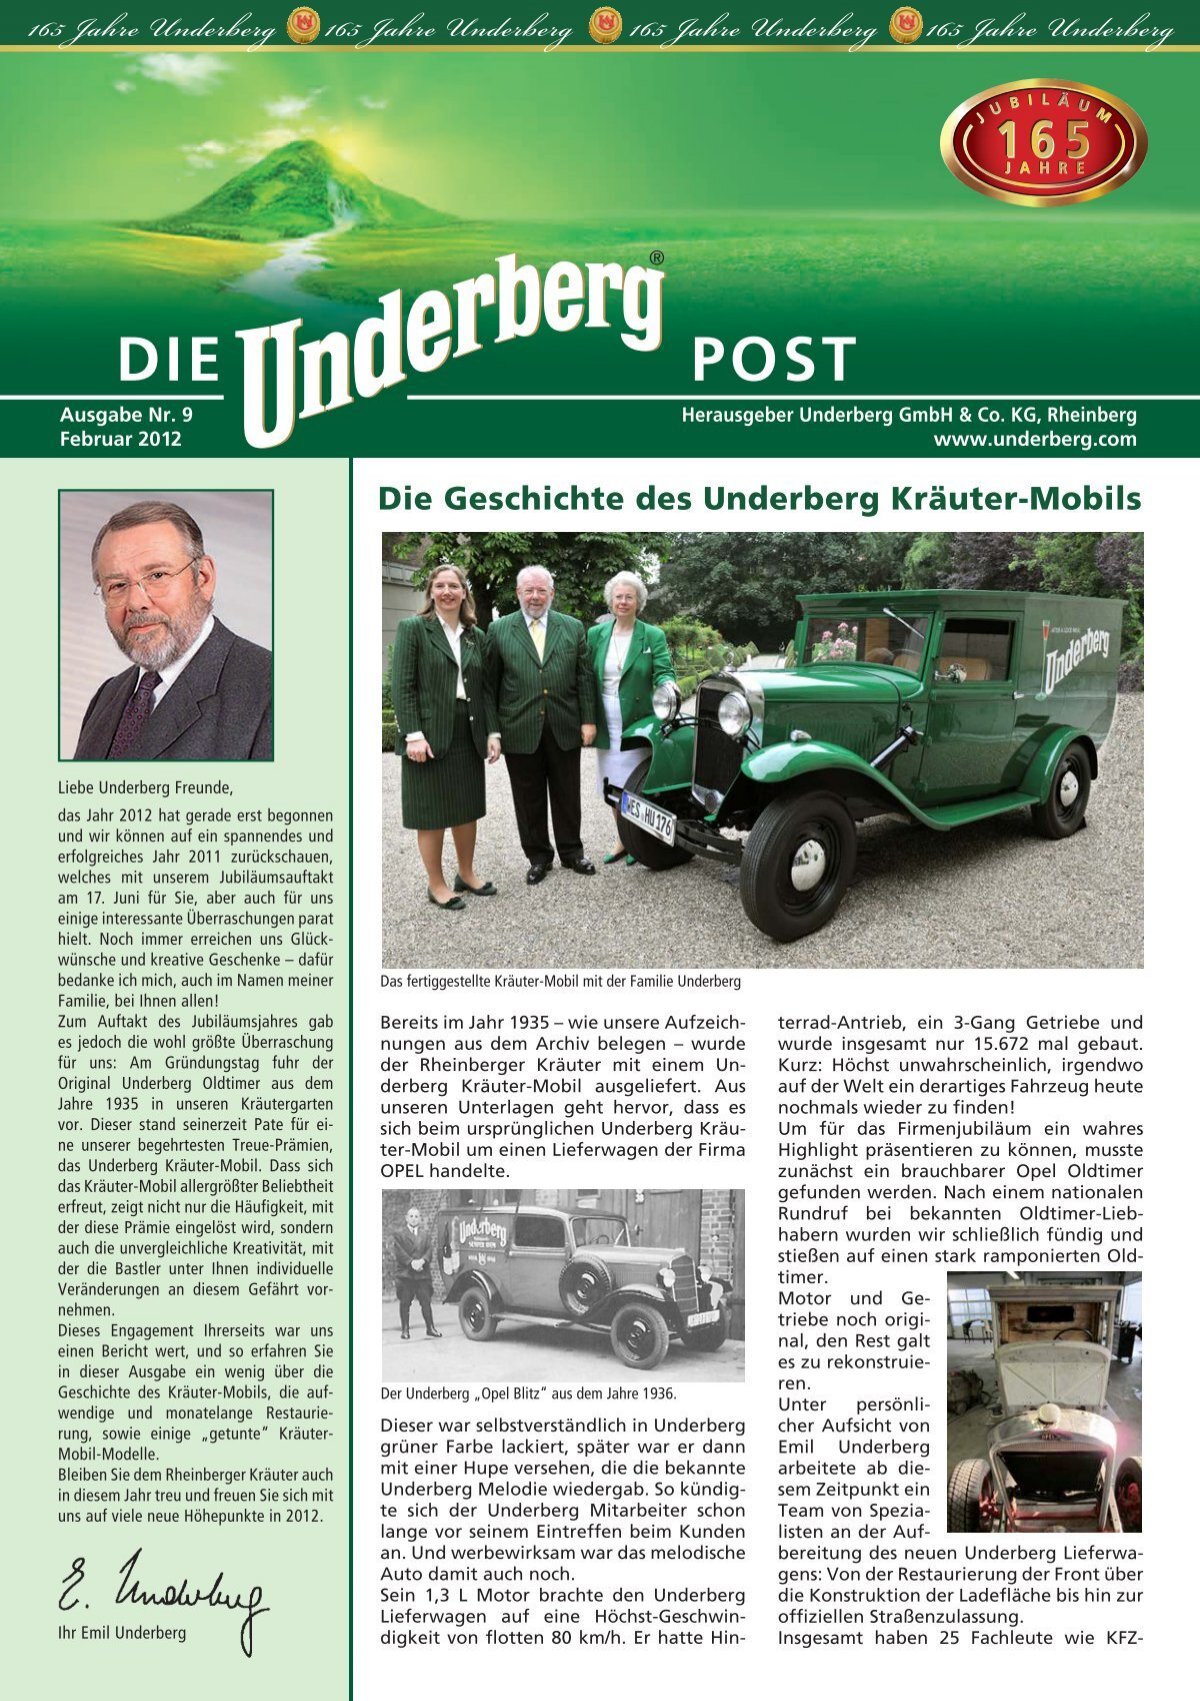 165 Jahre Underberg 165 Jahre Underberg 165 Jahre Underberg - 165 Jahre  Underberg 165 Jahre Underberg 165 Jahre Underberg